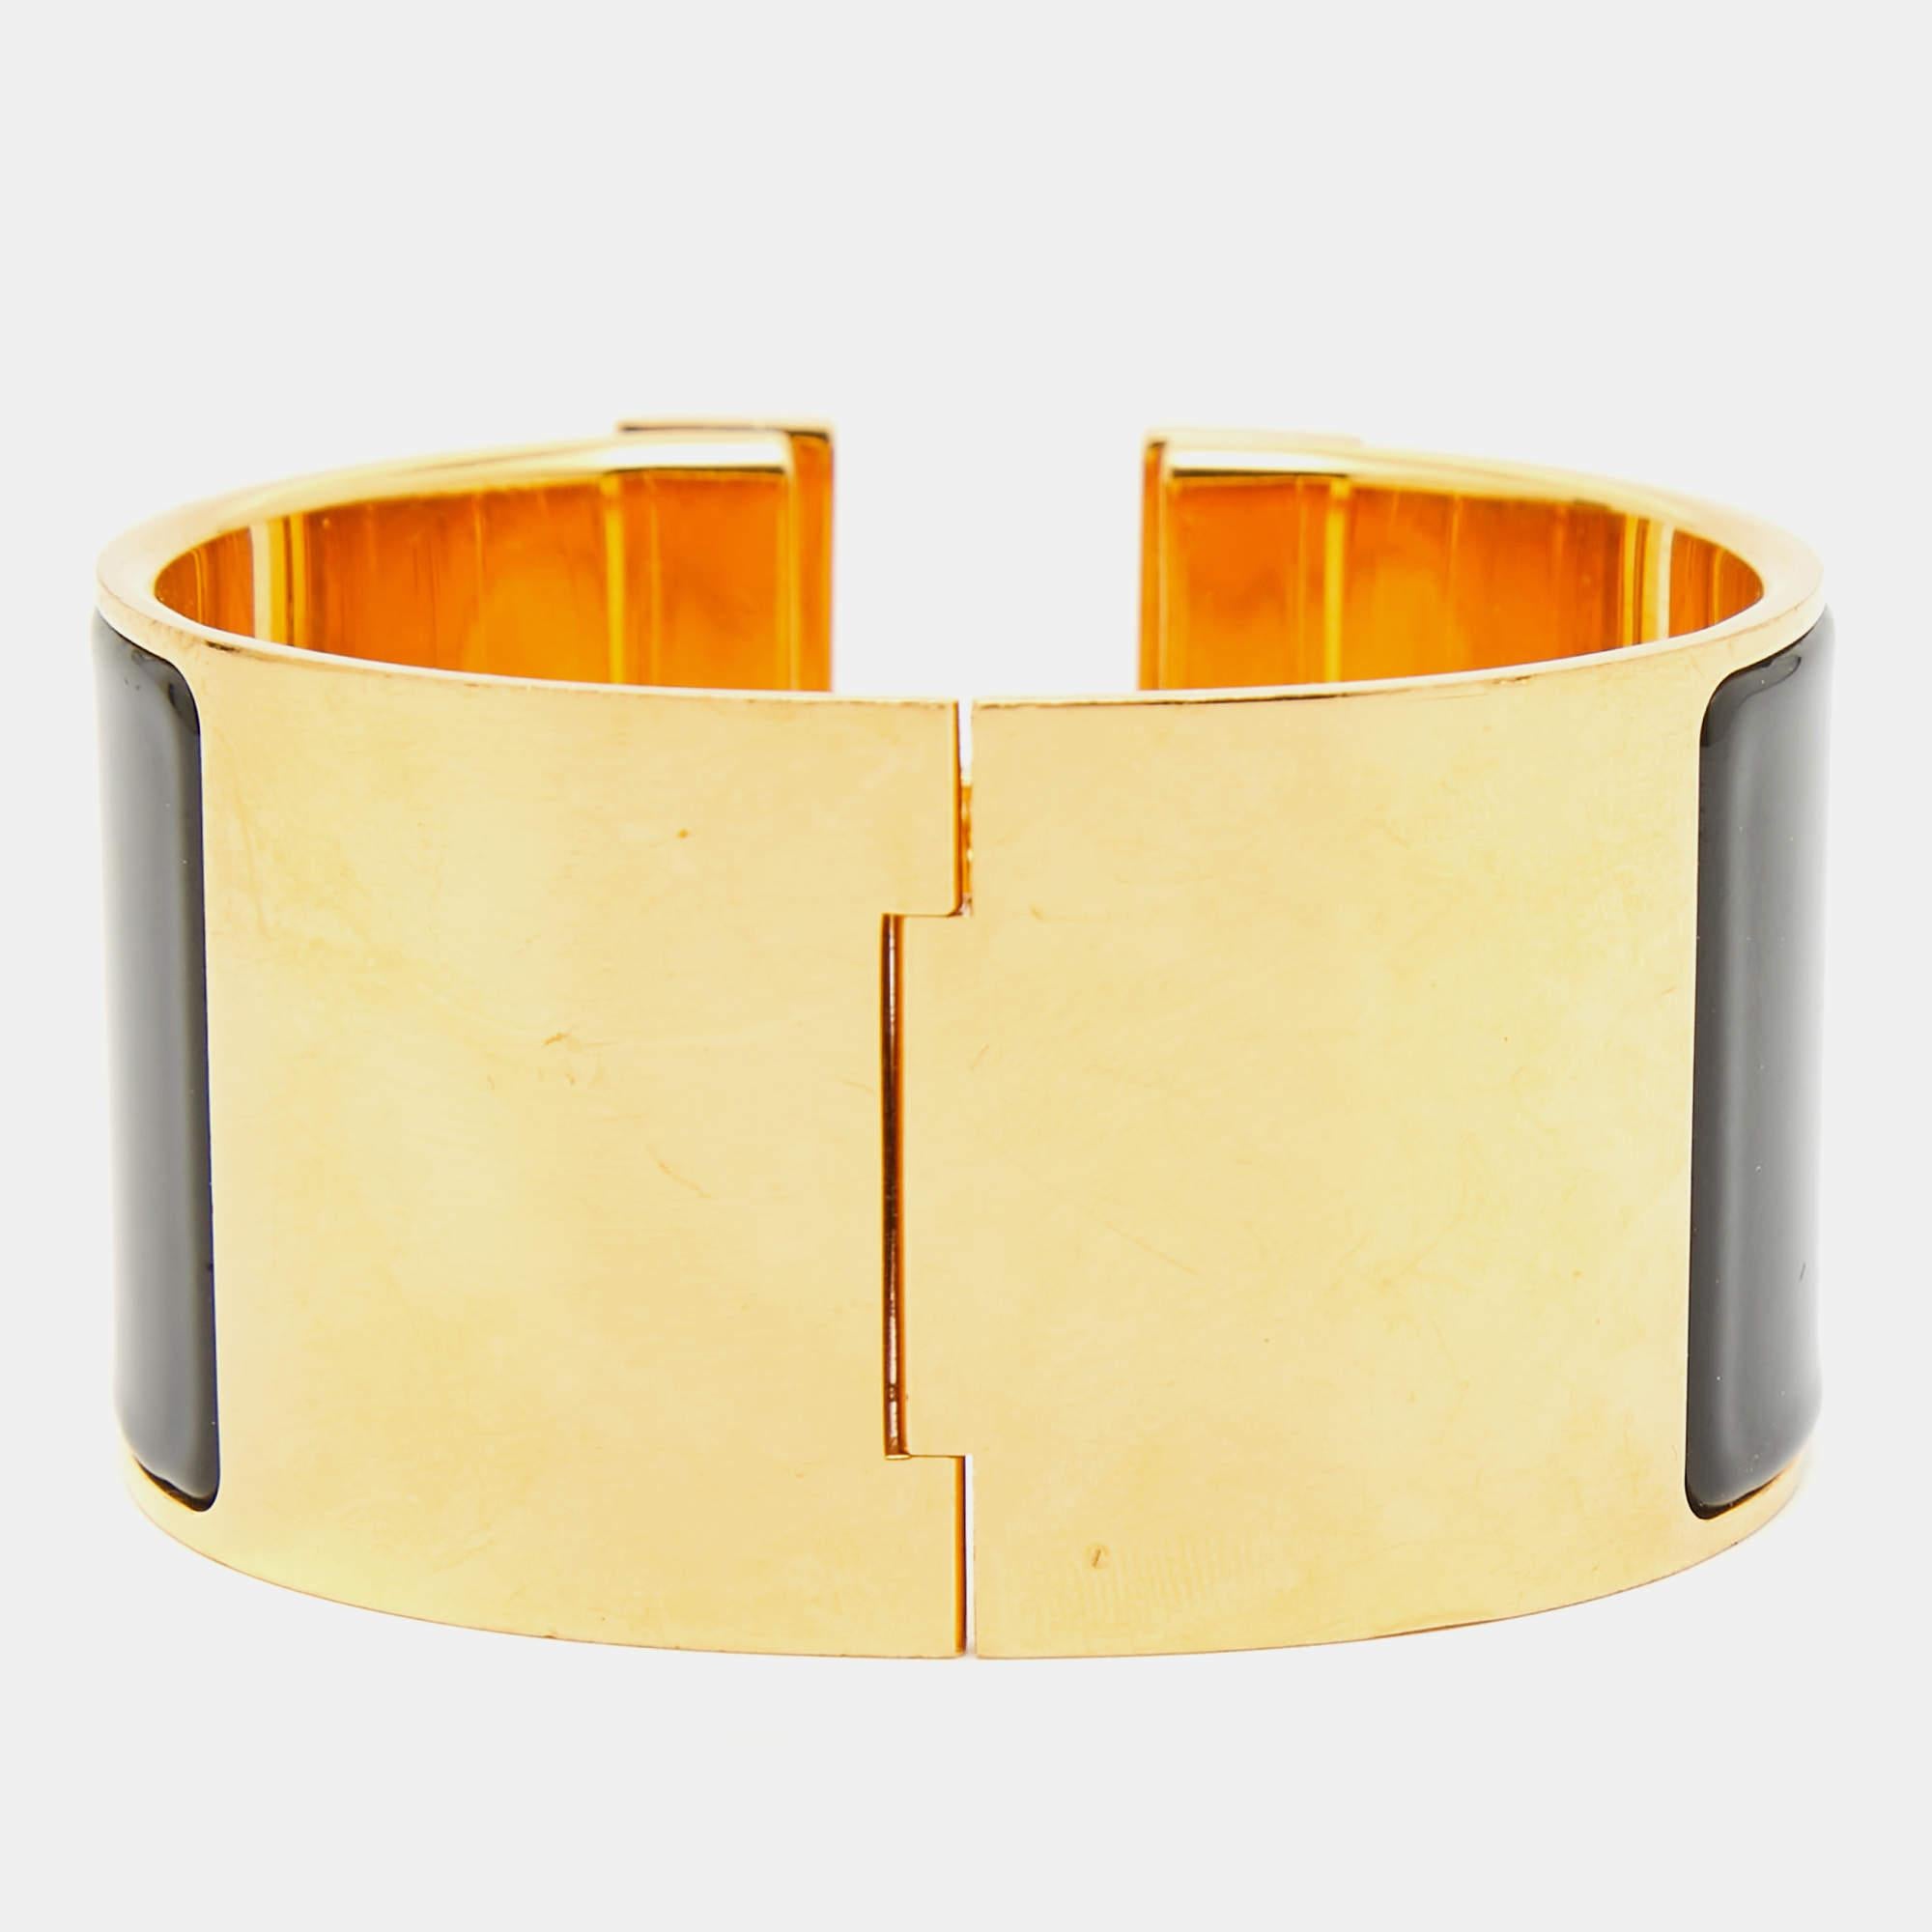 Das Hermès Clic Clac H-Armband ist ein exquisites Schmuckstück. Das glänzende Emailleband mit der markanten, vergoldeten H-förmigen Schließe bildet einen auffälligen Kontrast. Dieses luxuriöse und elegante Accessoire verkörpert zeitlosen Stil und